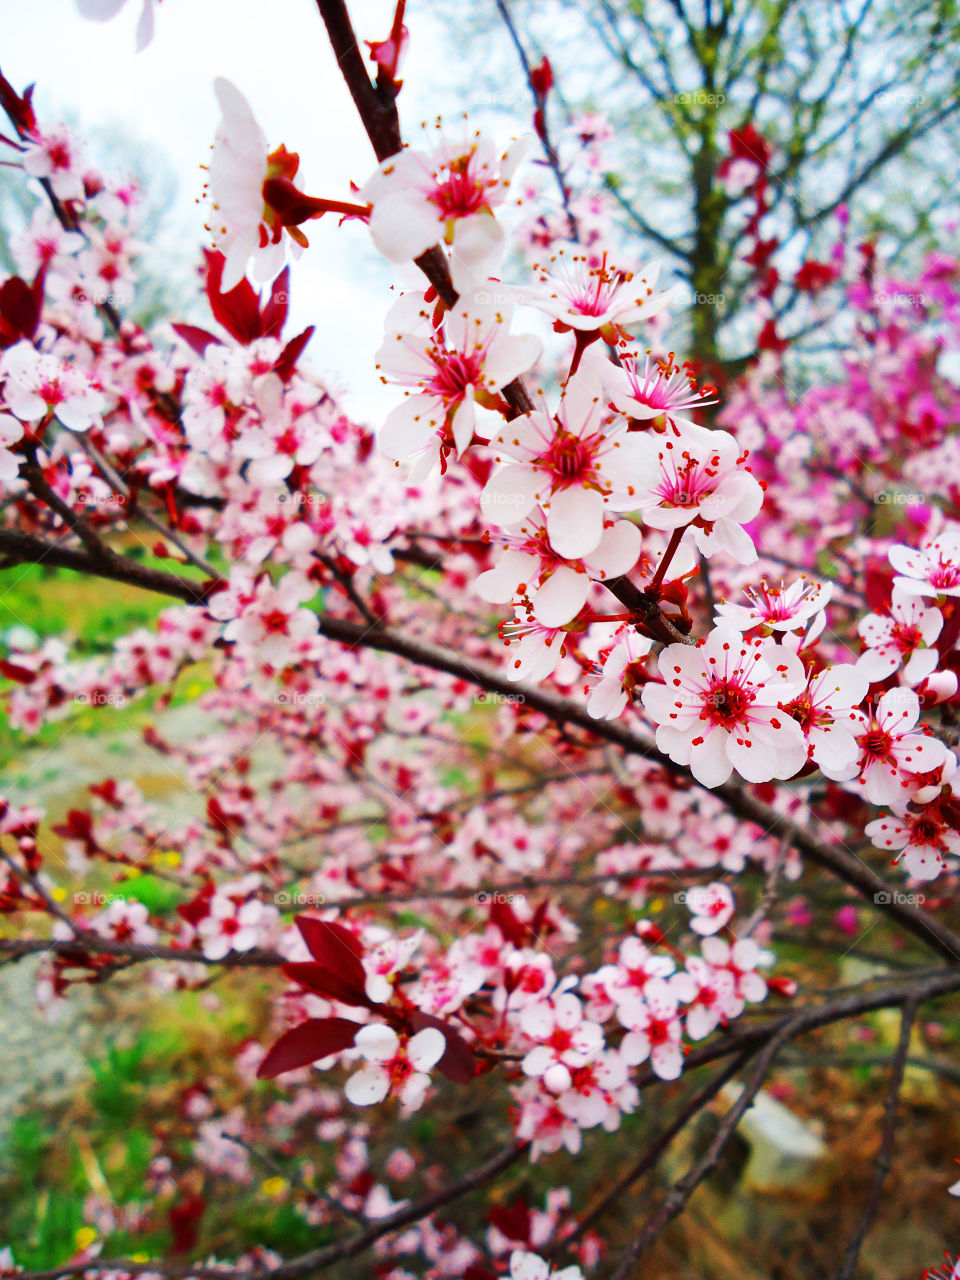 The Cherry Blossom